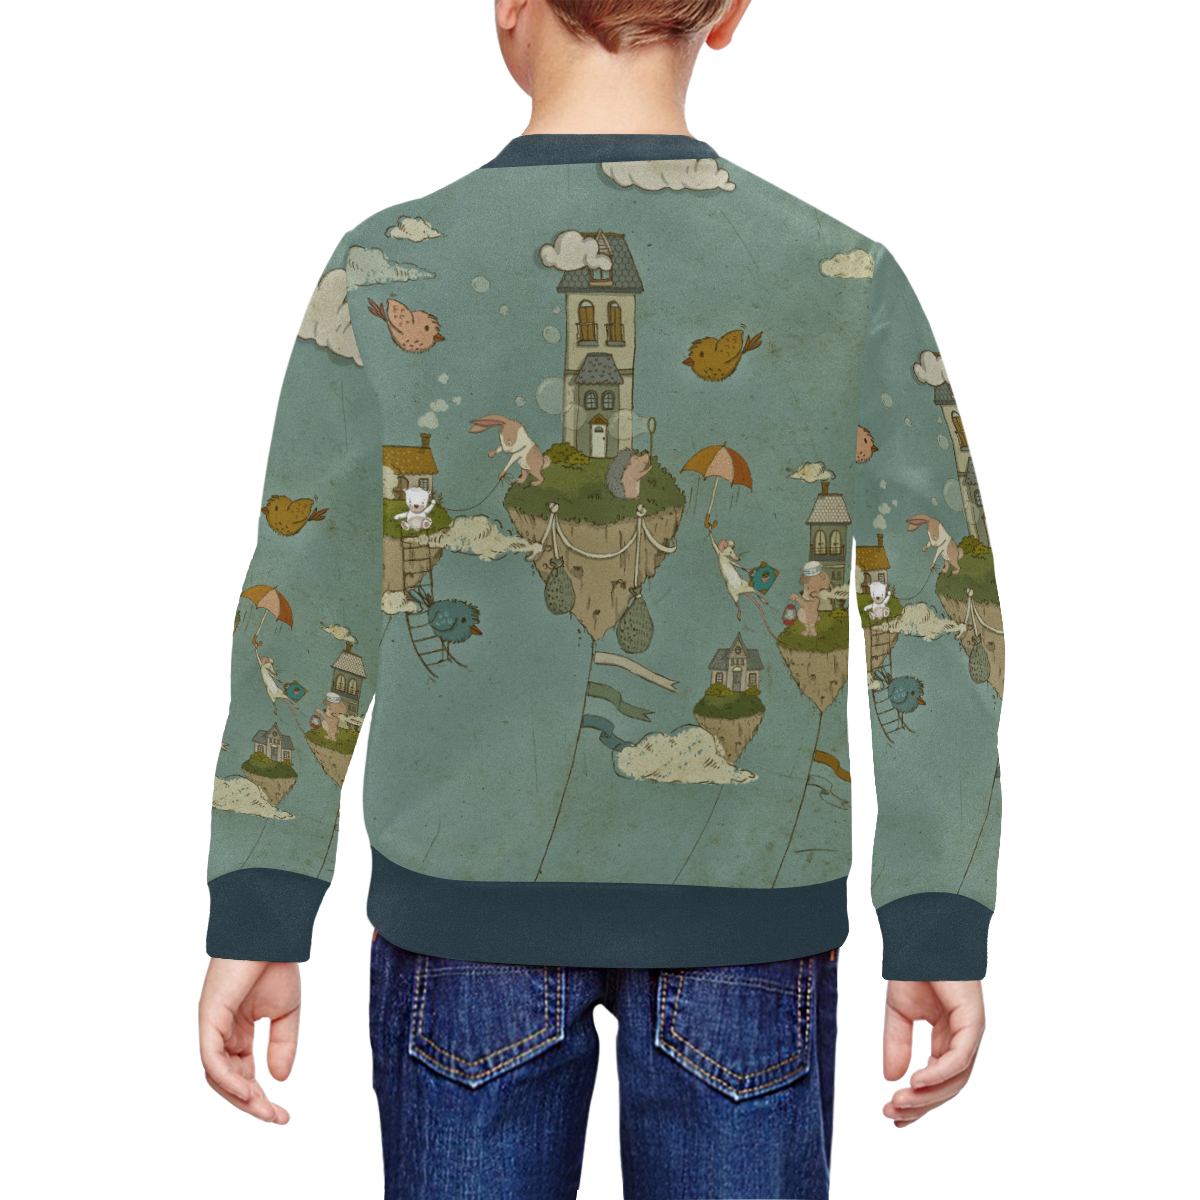 Vintage Floating Islands All Over Print Crewneck Sweatshirt for Kids (Model H29)